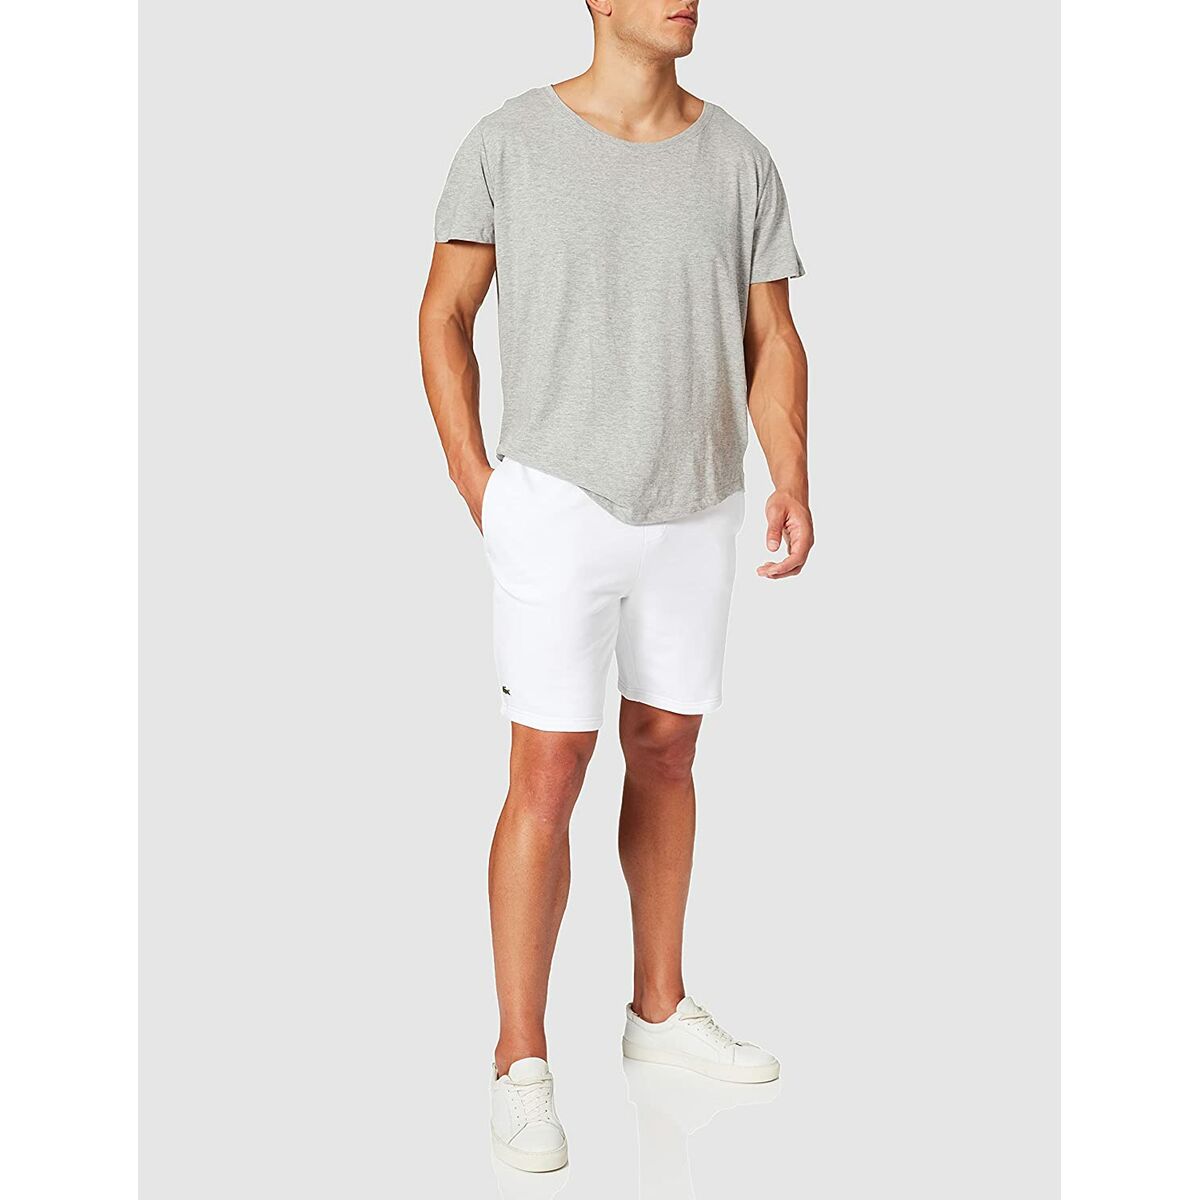 Pantaloni Corti Sportivi da Uomo Lacoste Bianco (5)